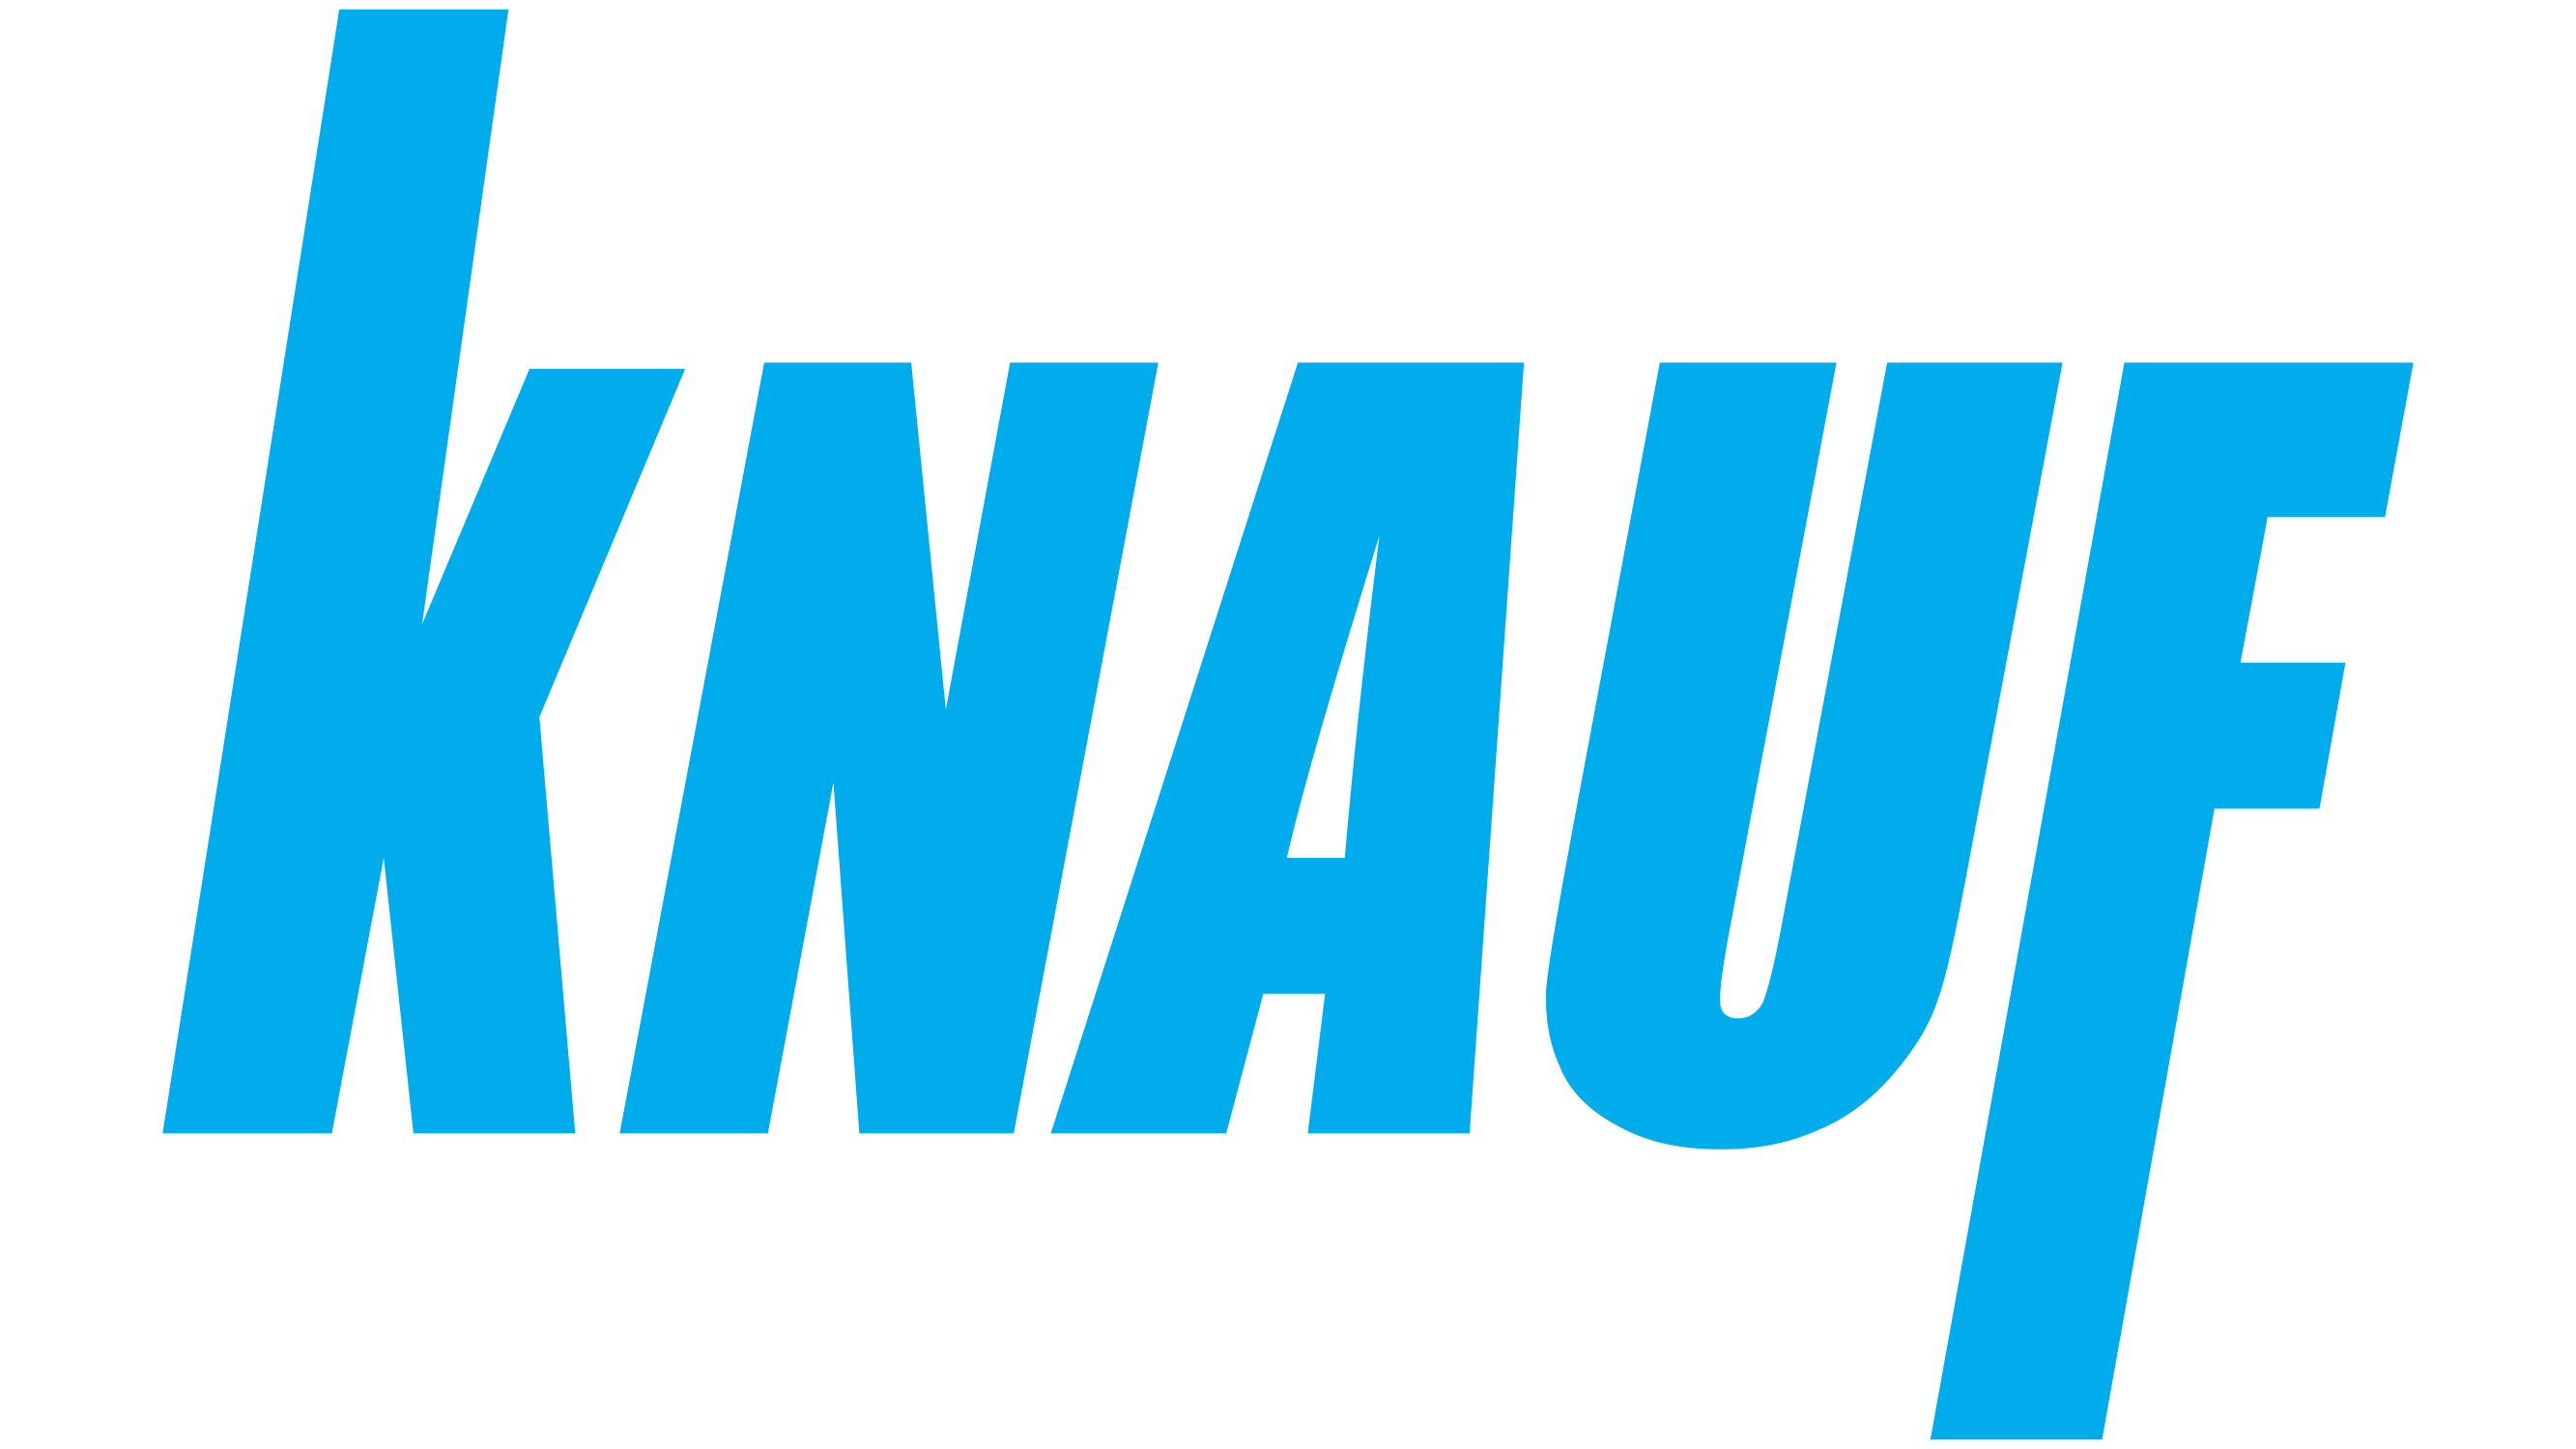 Knauf-logo